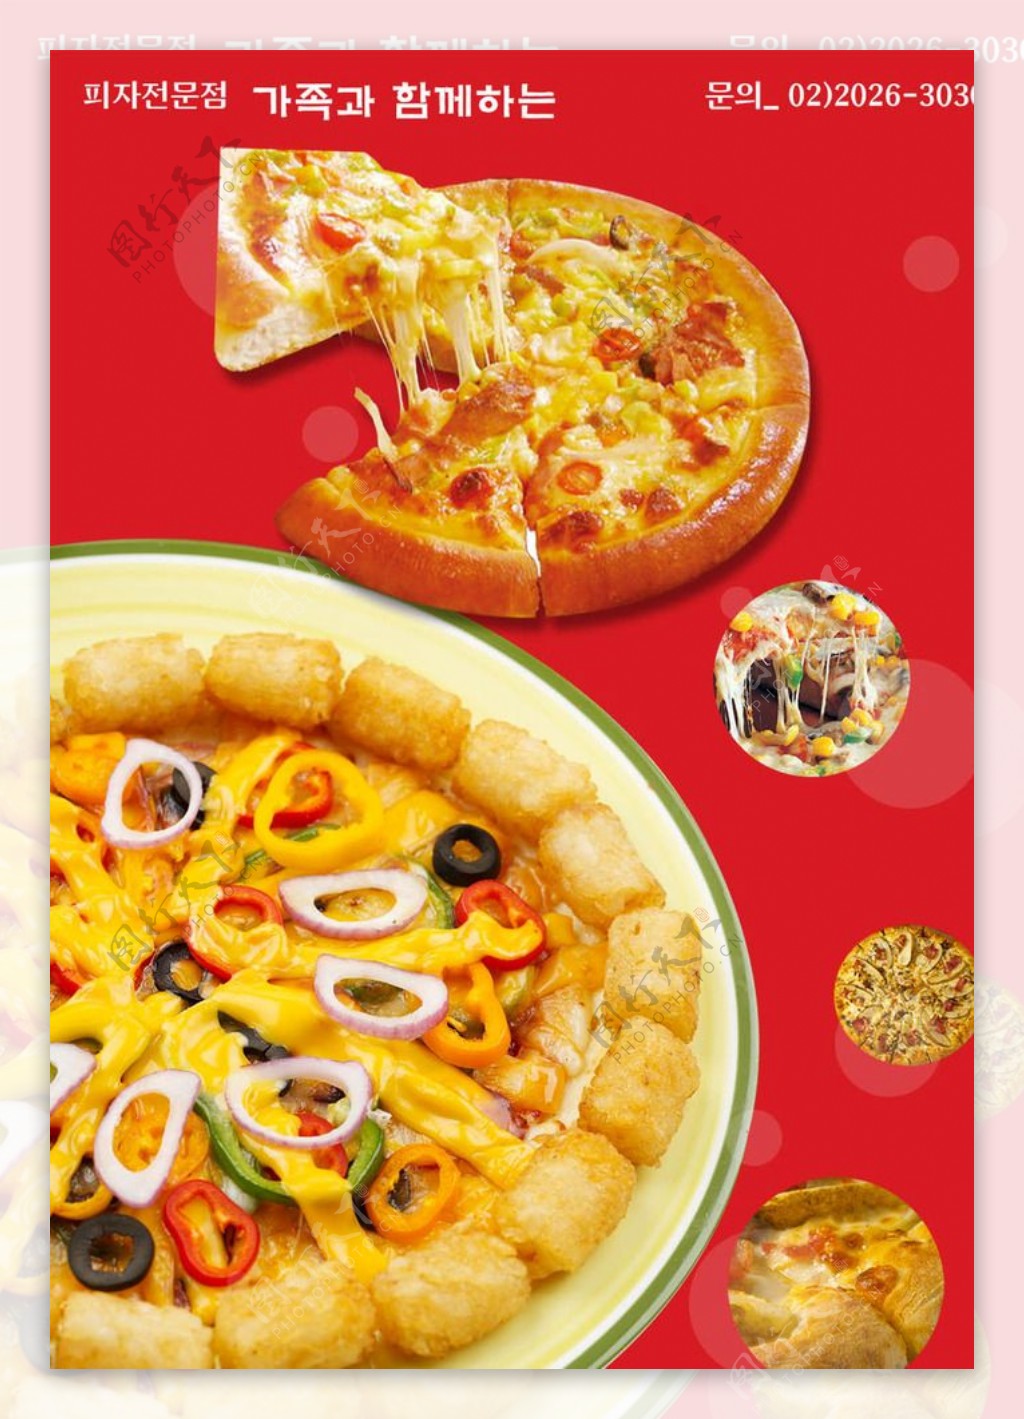 披萨广告图片